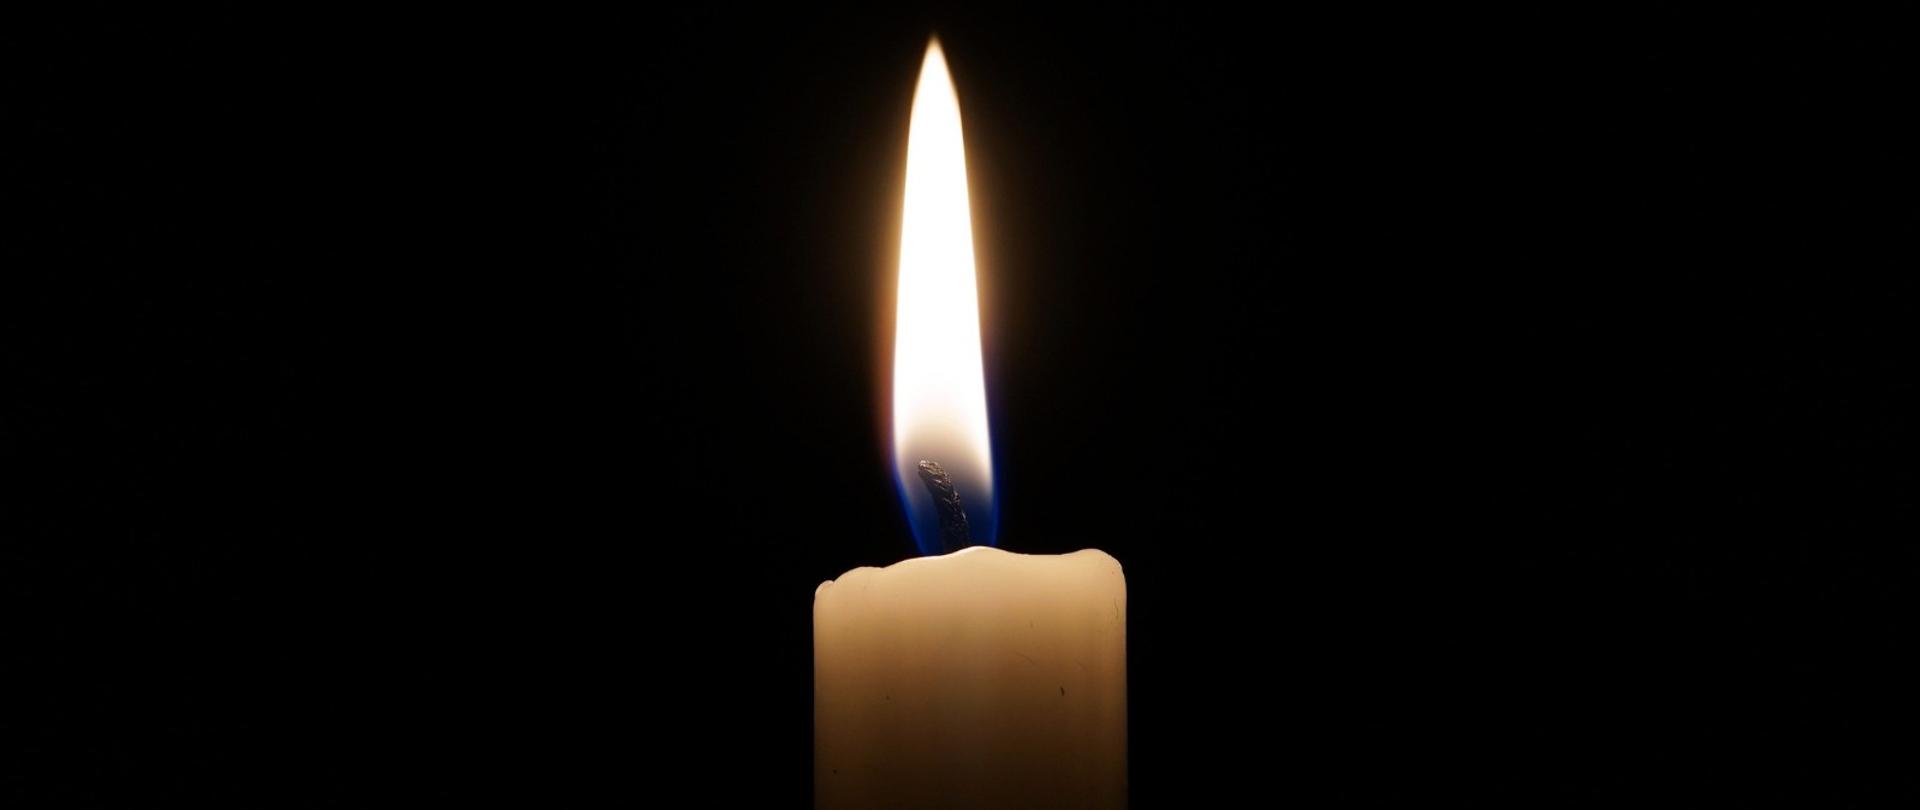 Zdjęcie przedstawia świeczkę jako symbol żałoby po odejściu bliskiej osoby.